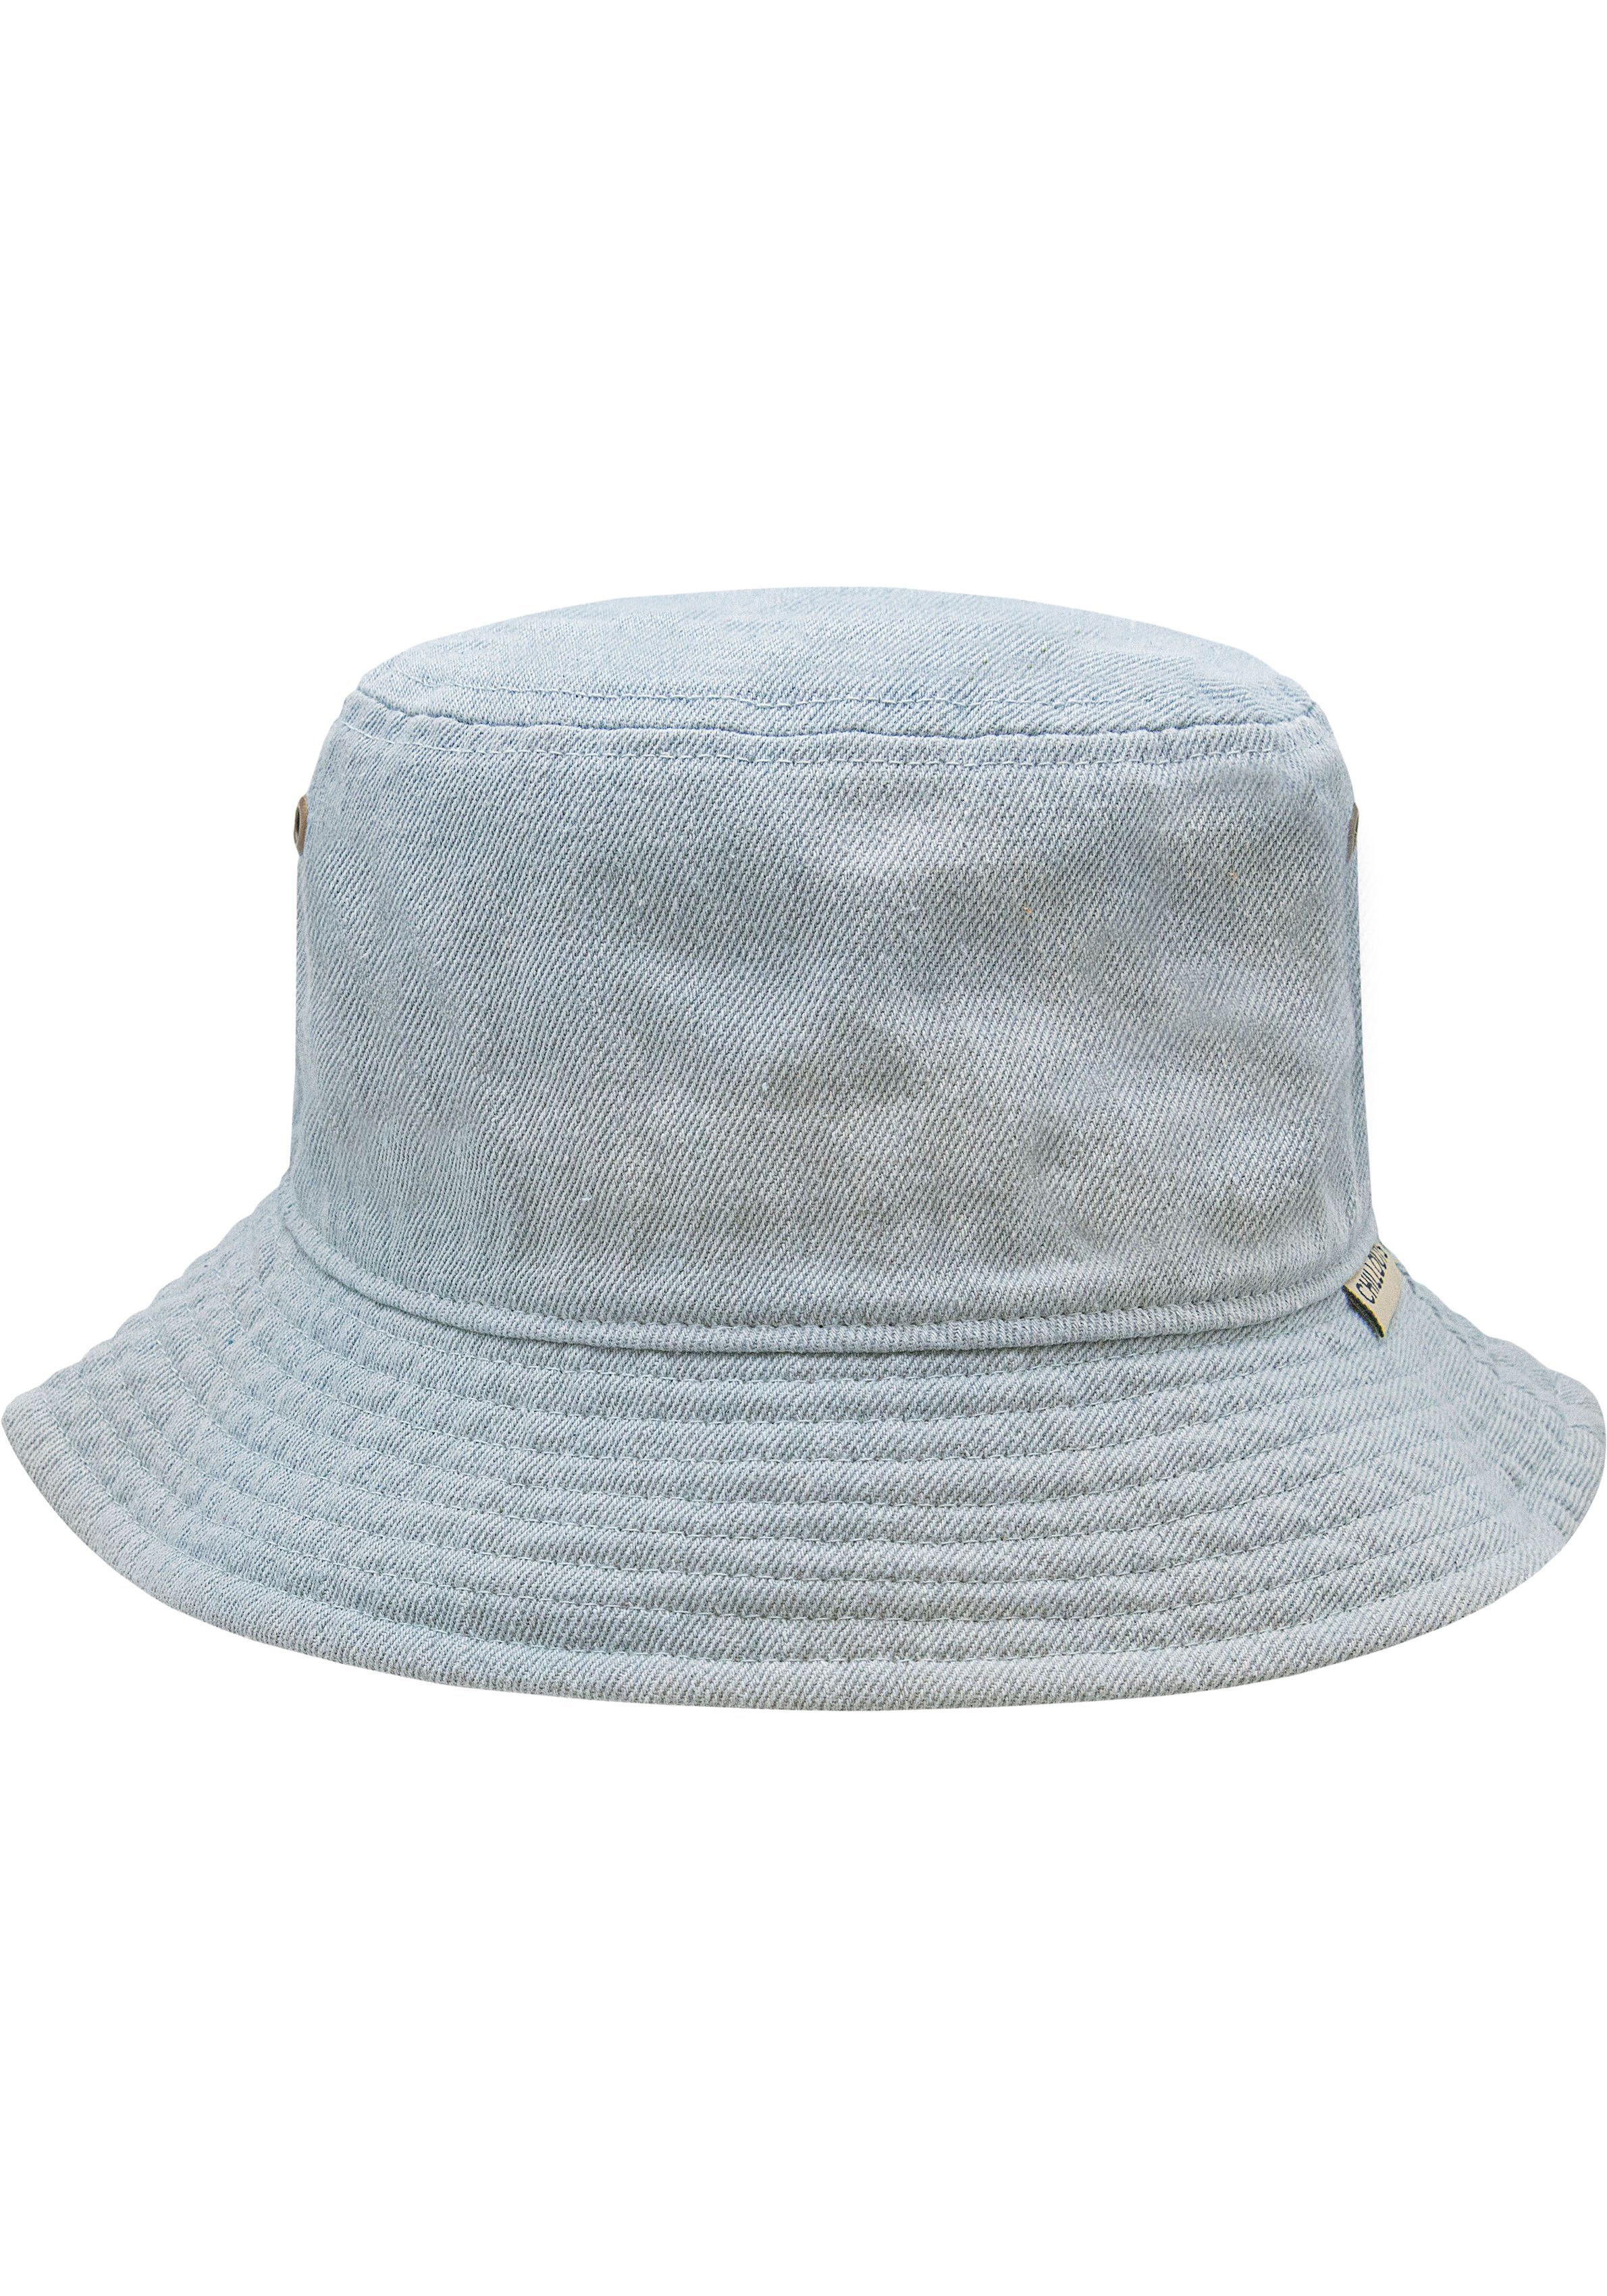 chillouts Fischerhut Braga Hat hellblau | Sonnenhüte